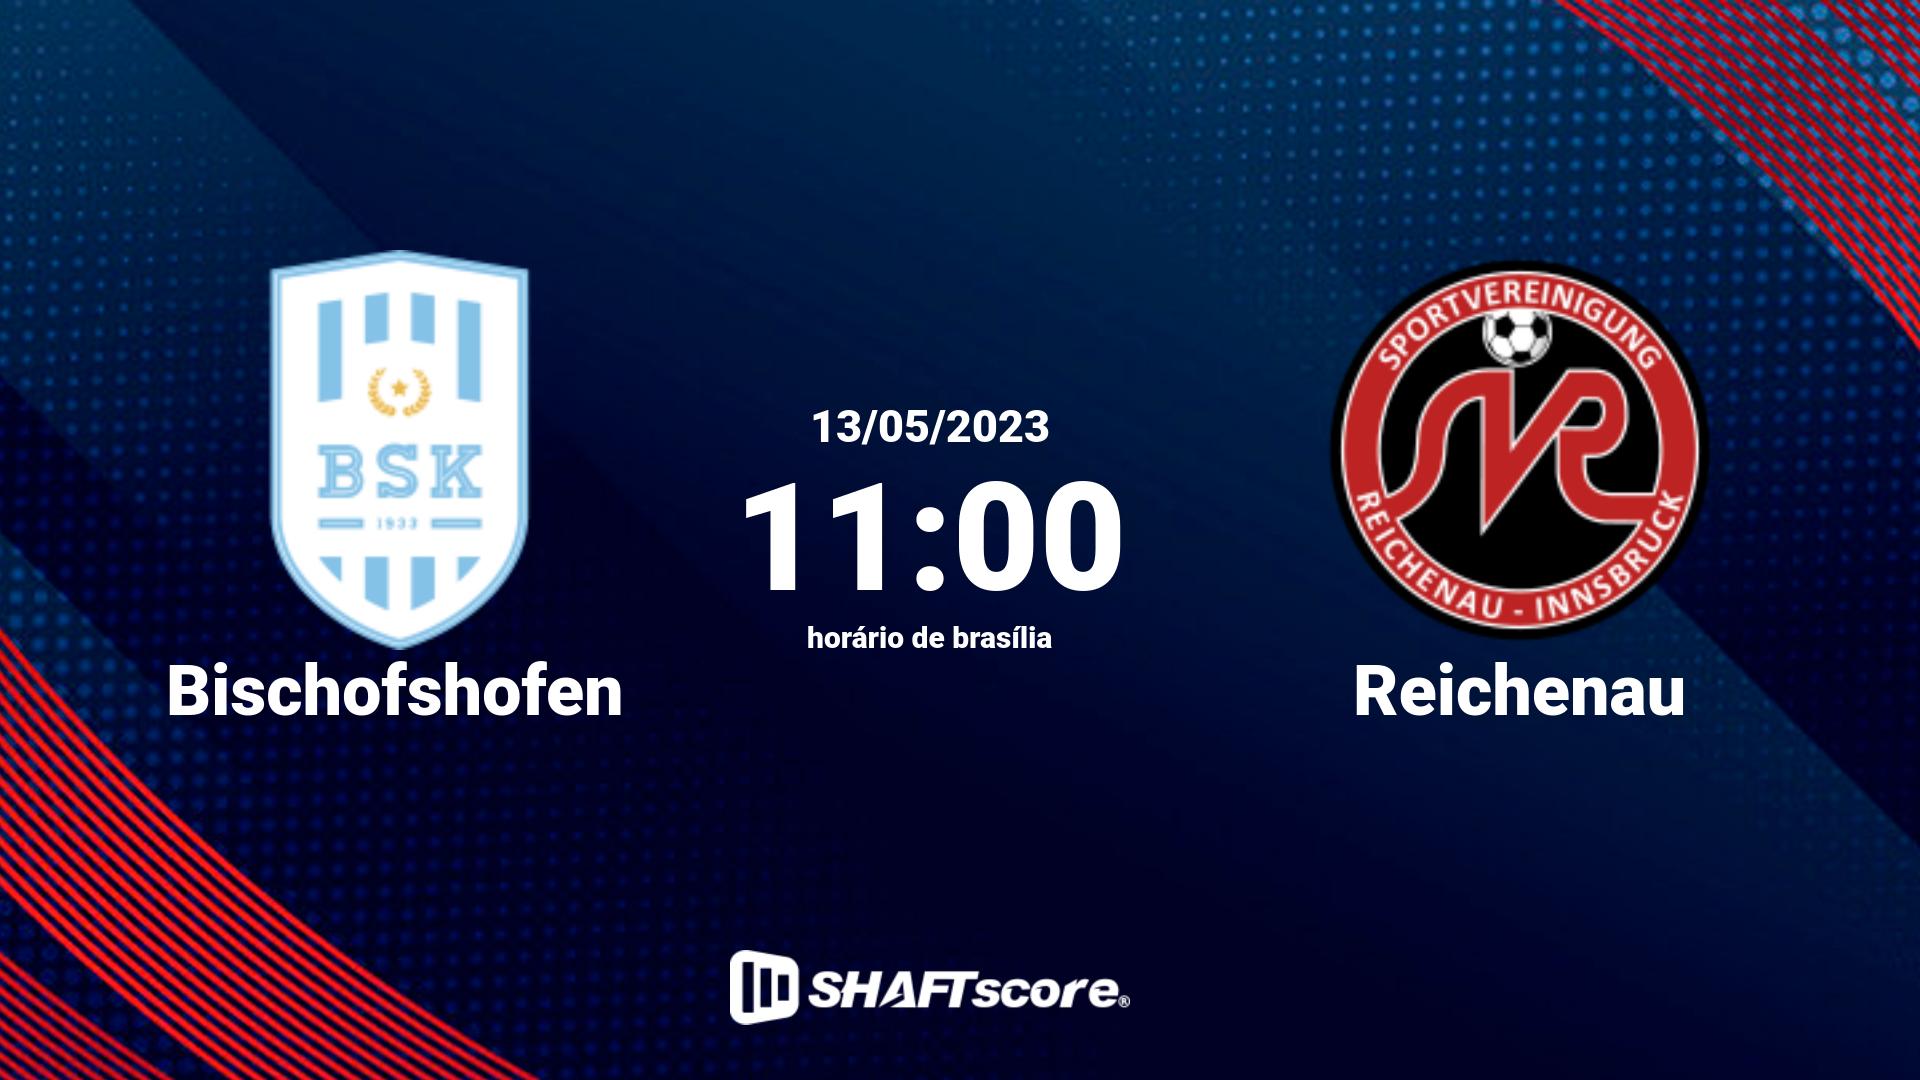 Estatísticas do jogo Bischofshofen vs Reichenau 13.05 11:00